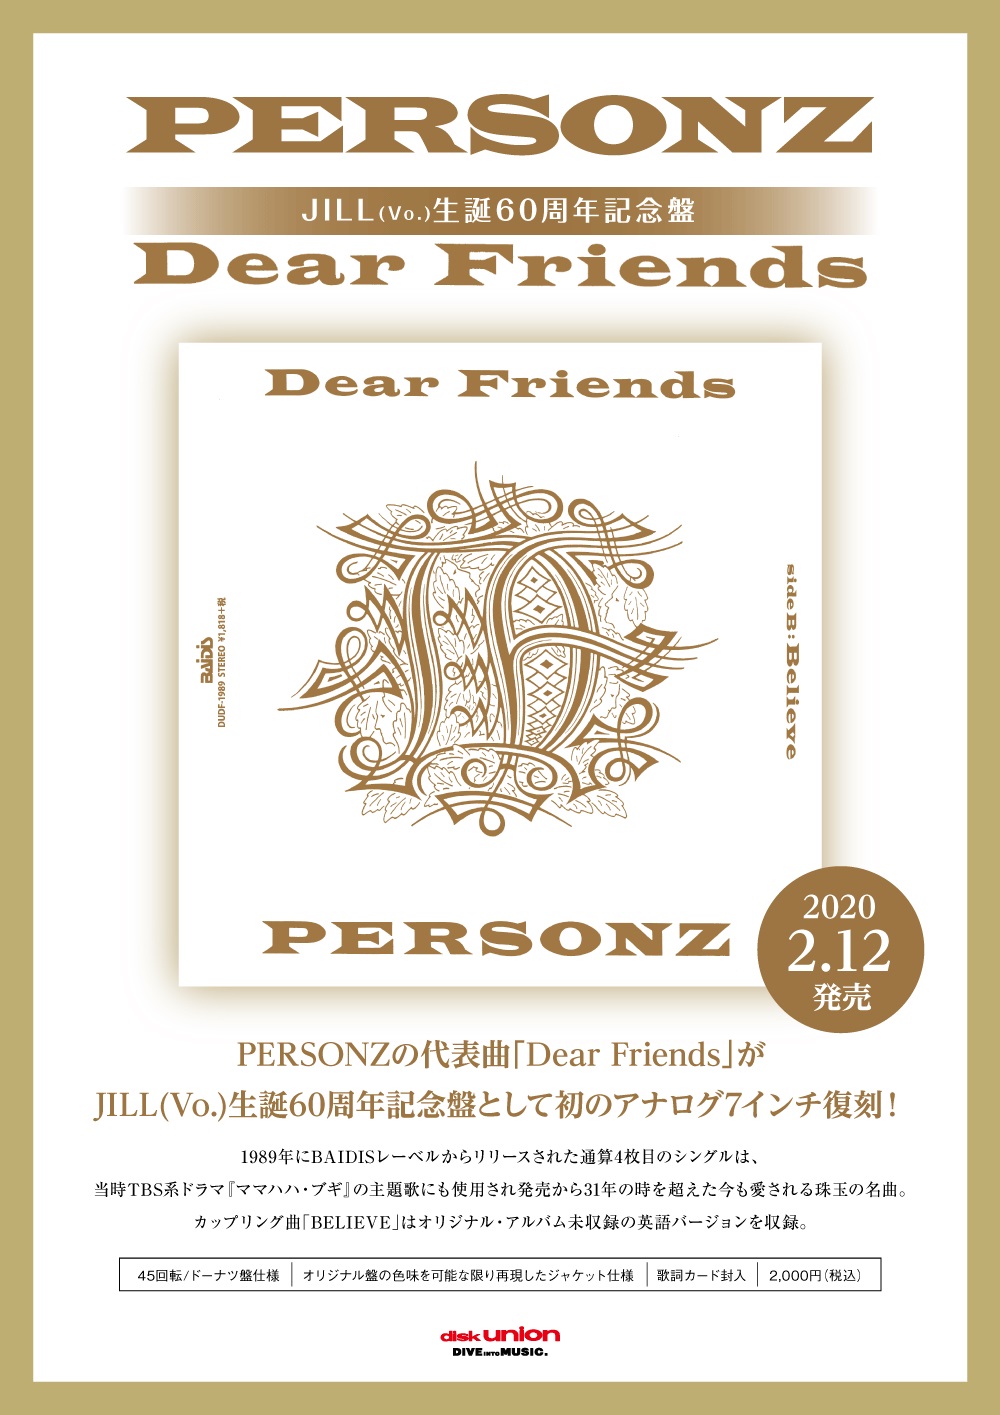 Dear Friends(7